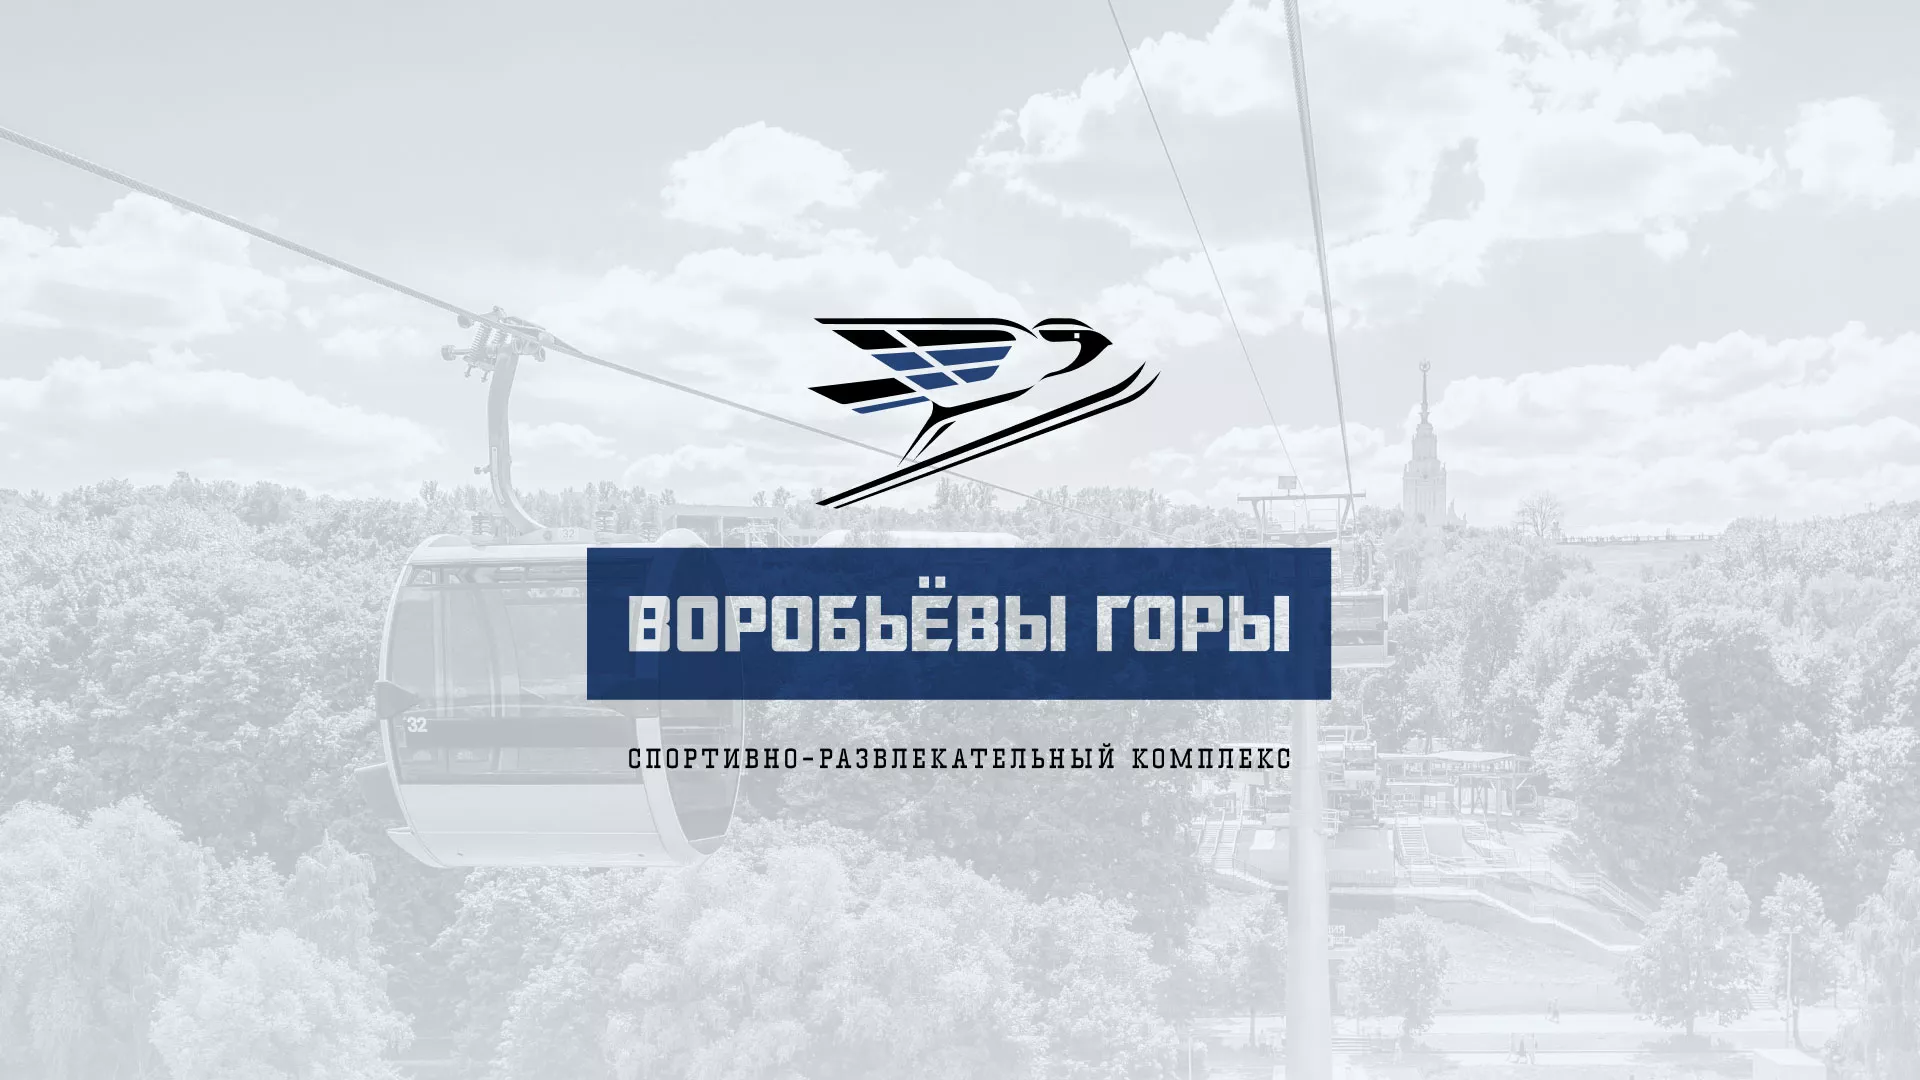 Разработка сайта в Шадринске для спортивно-развлекательного комплекса «Воробьёвы горы»